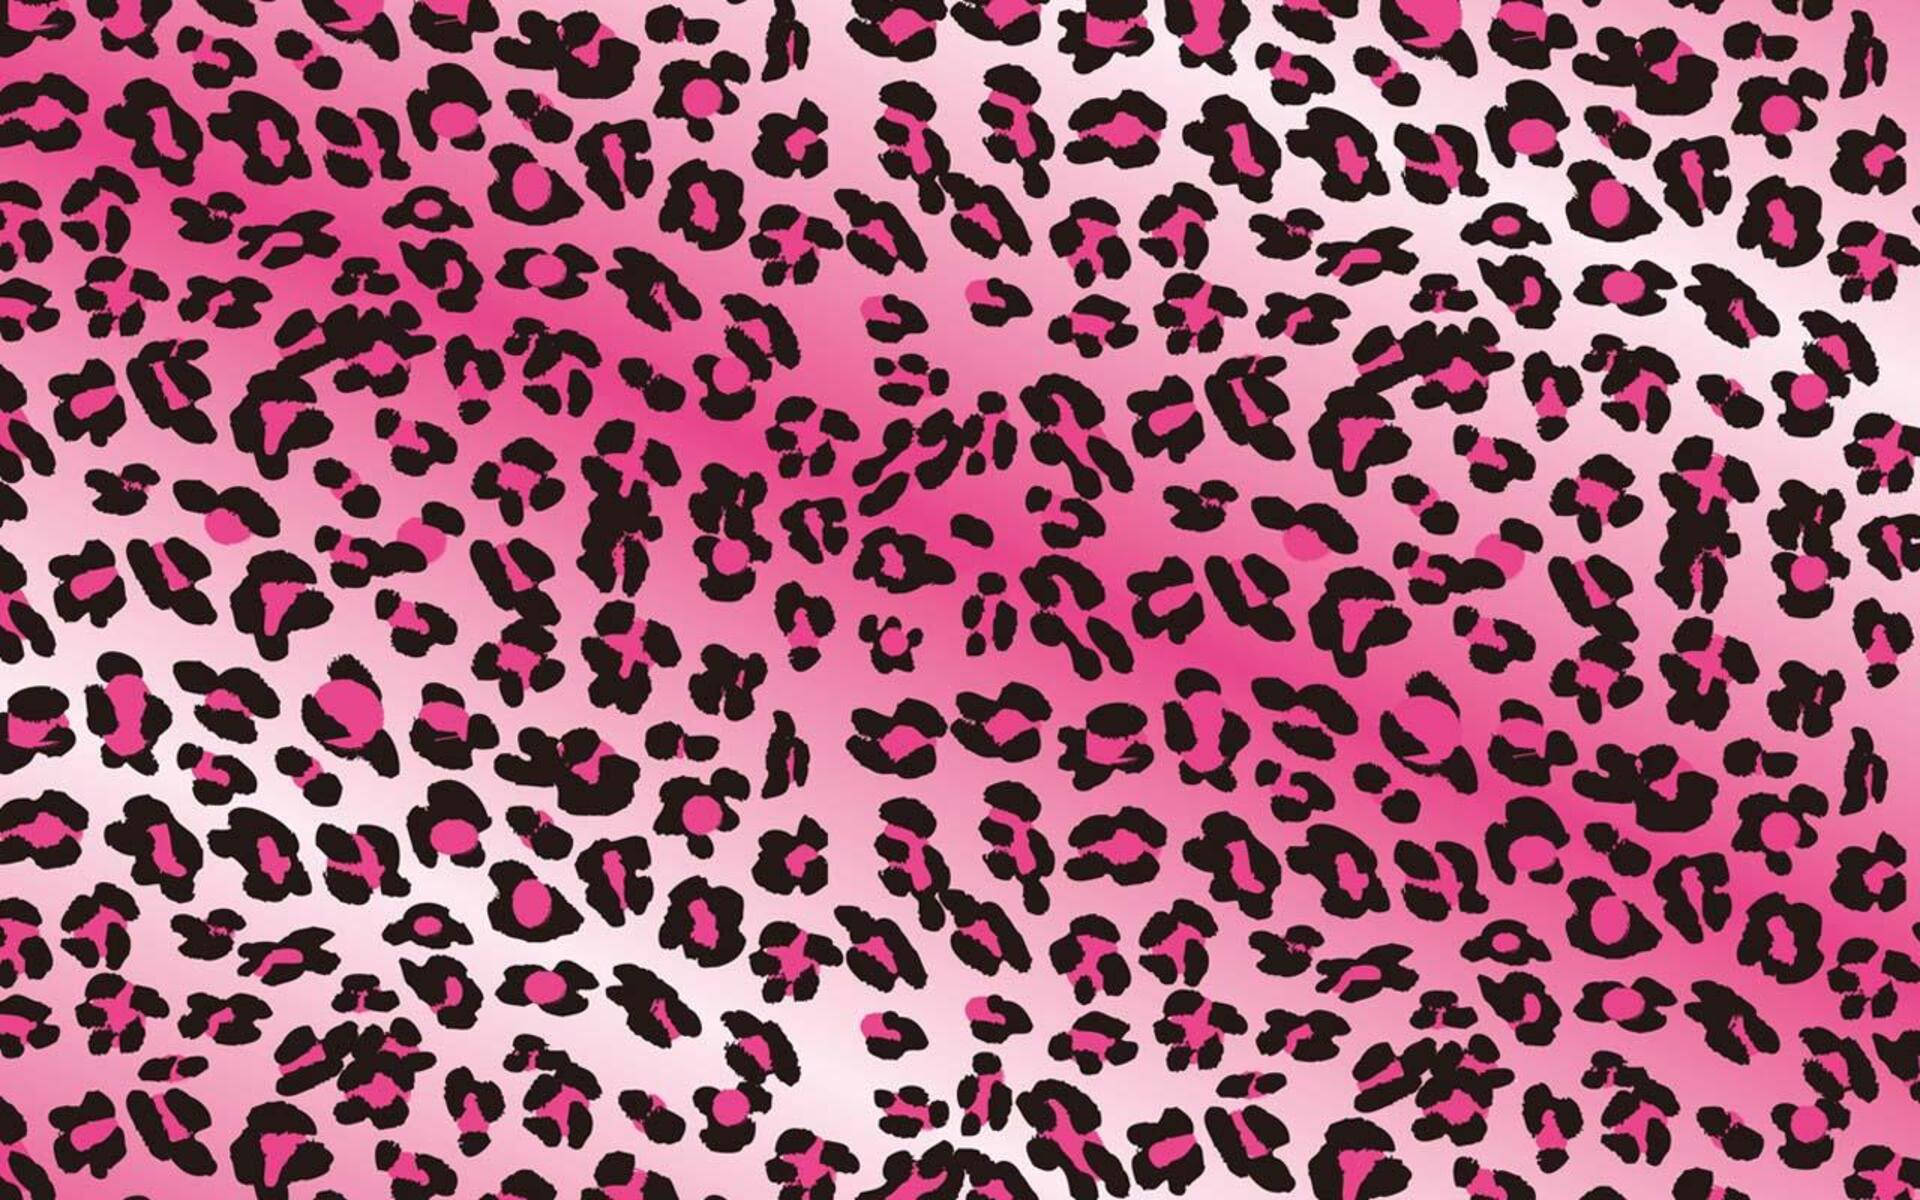 Trippy Leopard Print